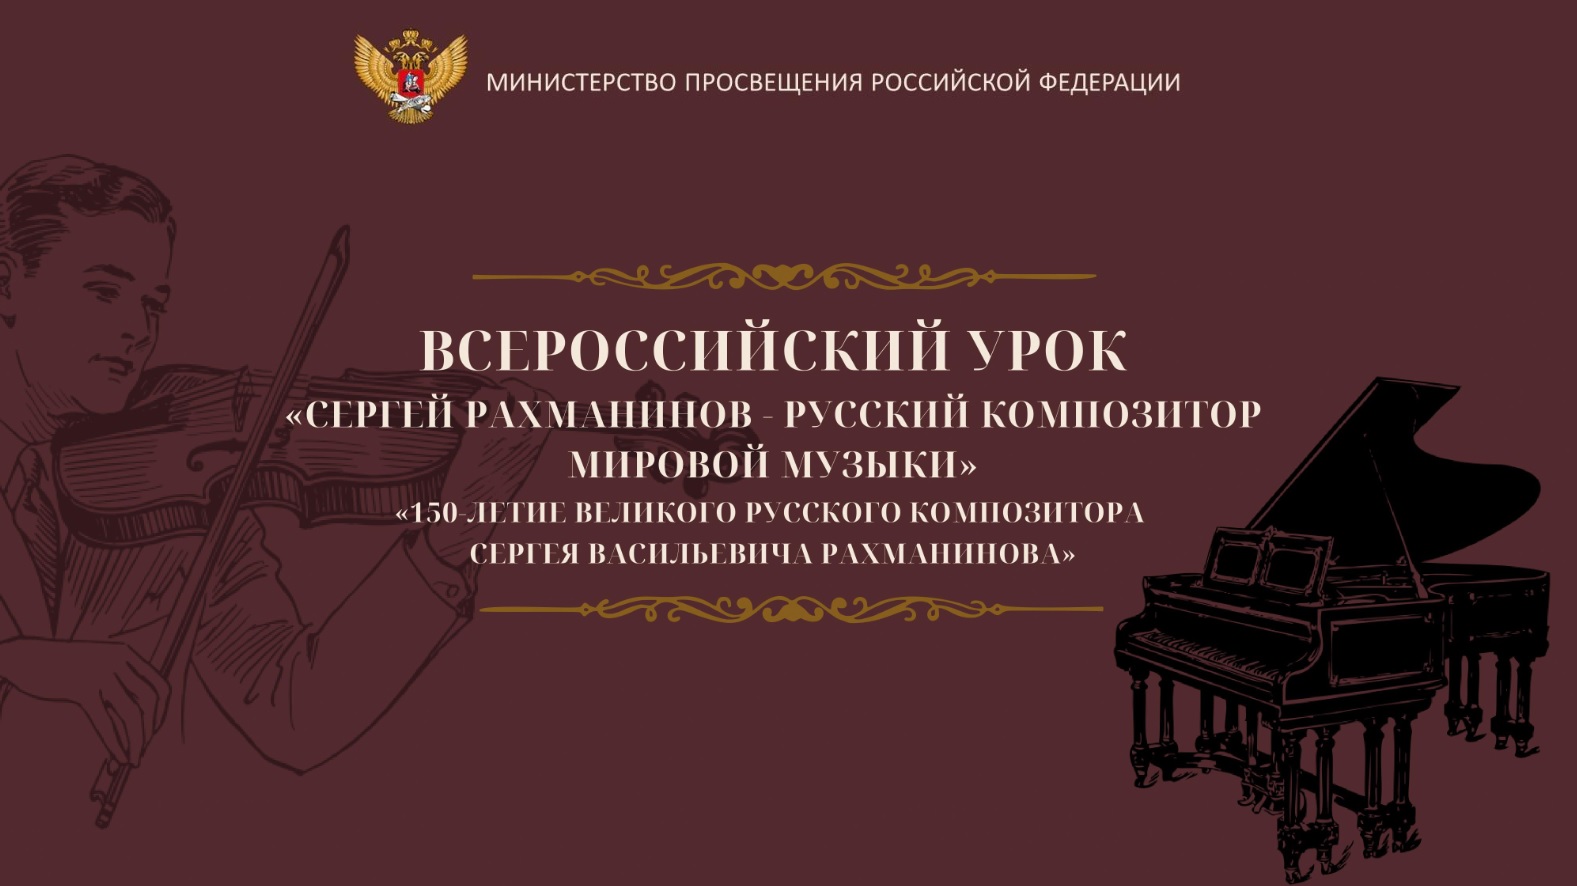 17 апреля во всех классах школы прошел Всероссийский урок музыки, посвященный 150-летию С.В. Рахманинова.